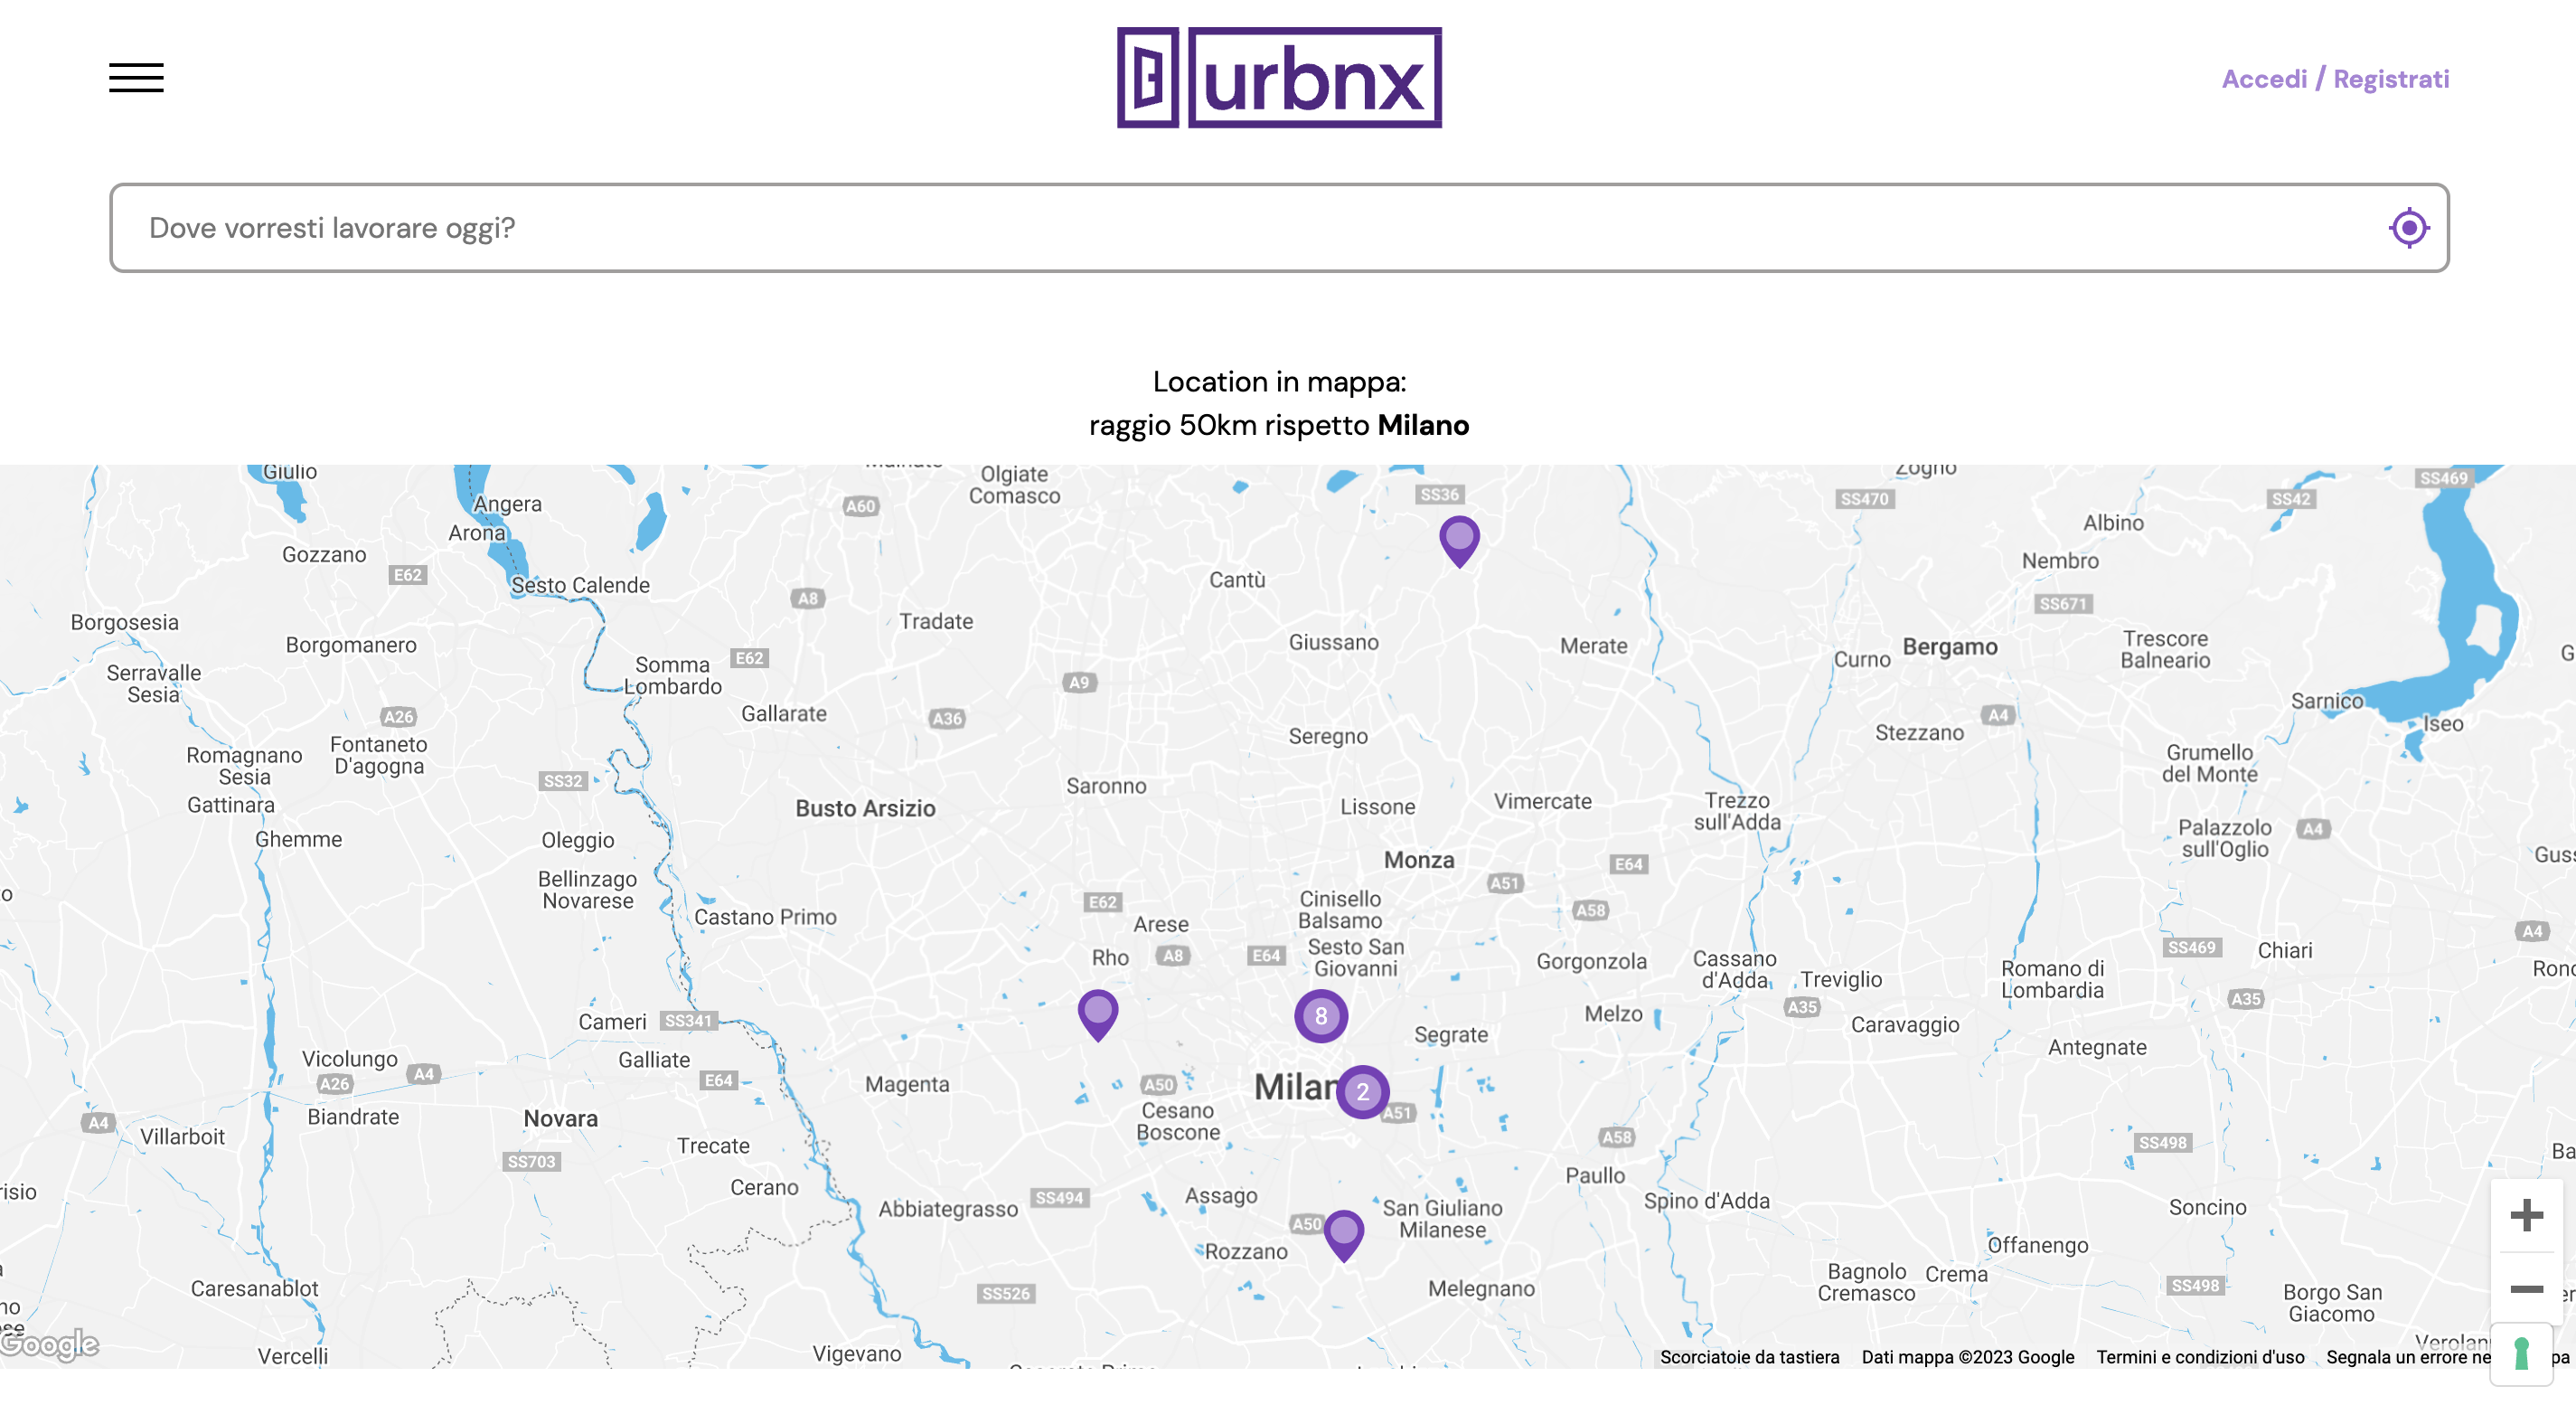 urbnx dove vorresti lavorare oggi?